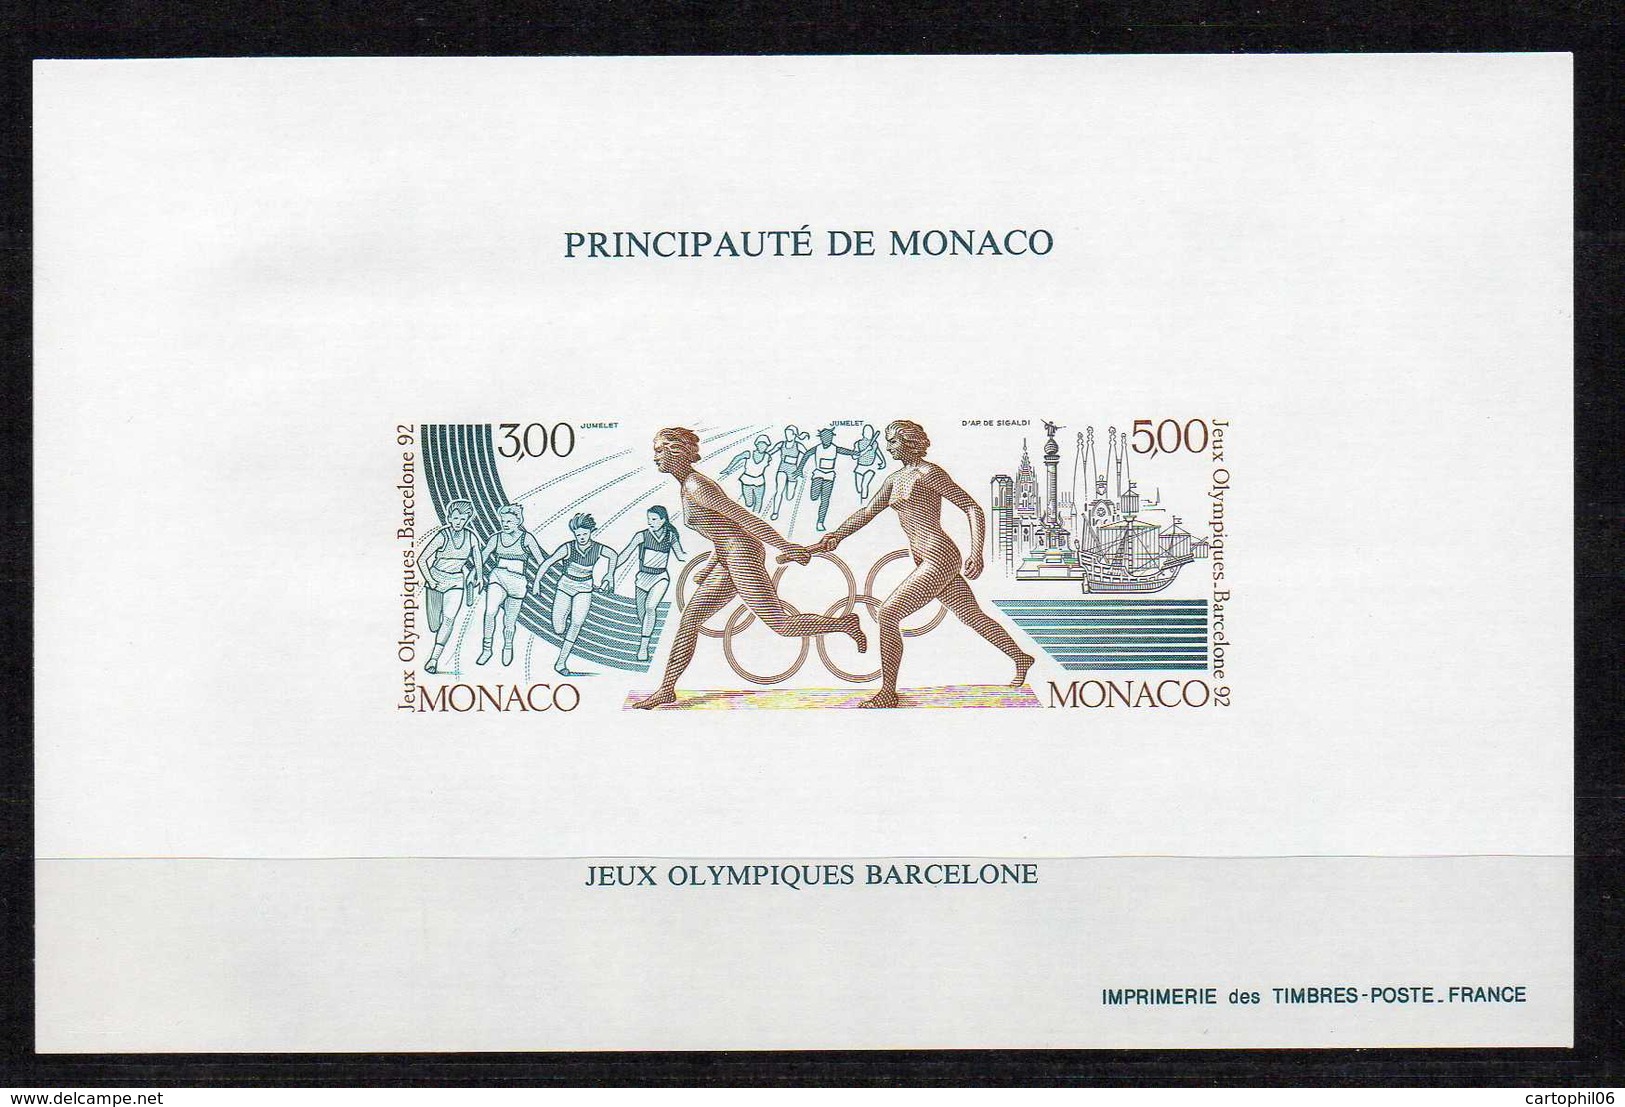 - MONACO Jeux Olympiques BARCELONE 1992 - Yvert & Tellier Bloc Spécial N° 16a Neuf ** NON DENTELE - Cote 270 EUR - - Blocs